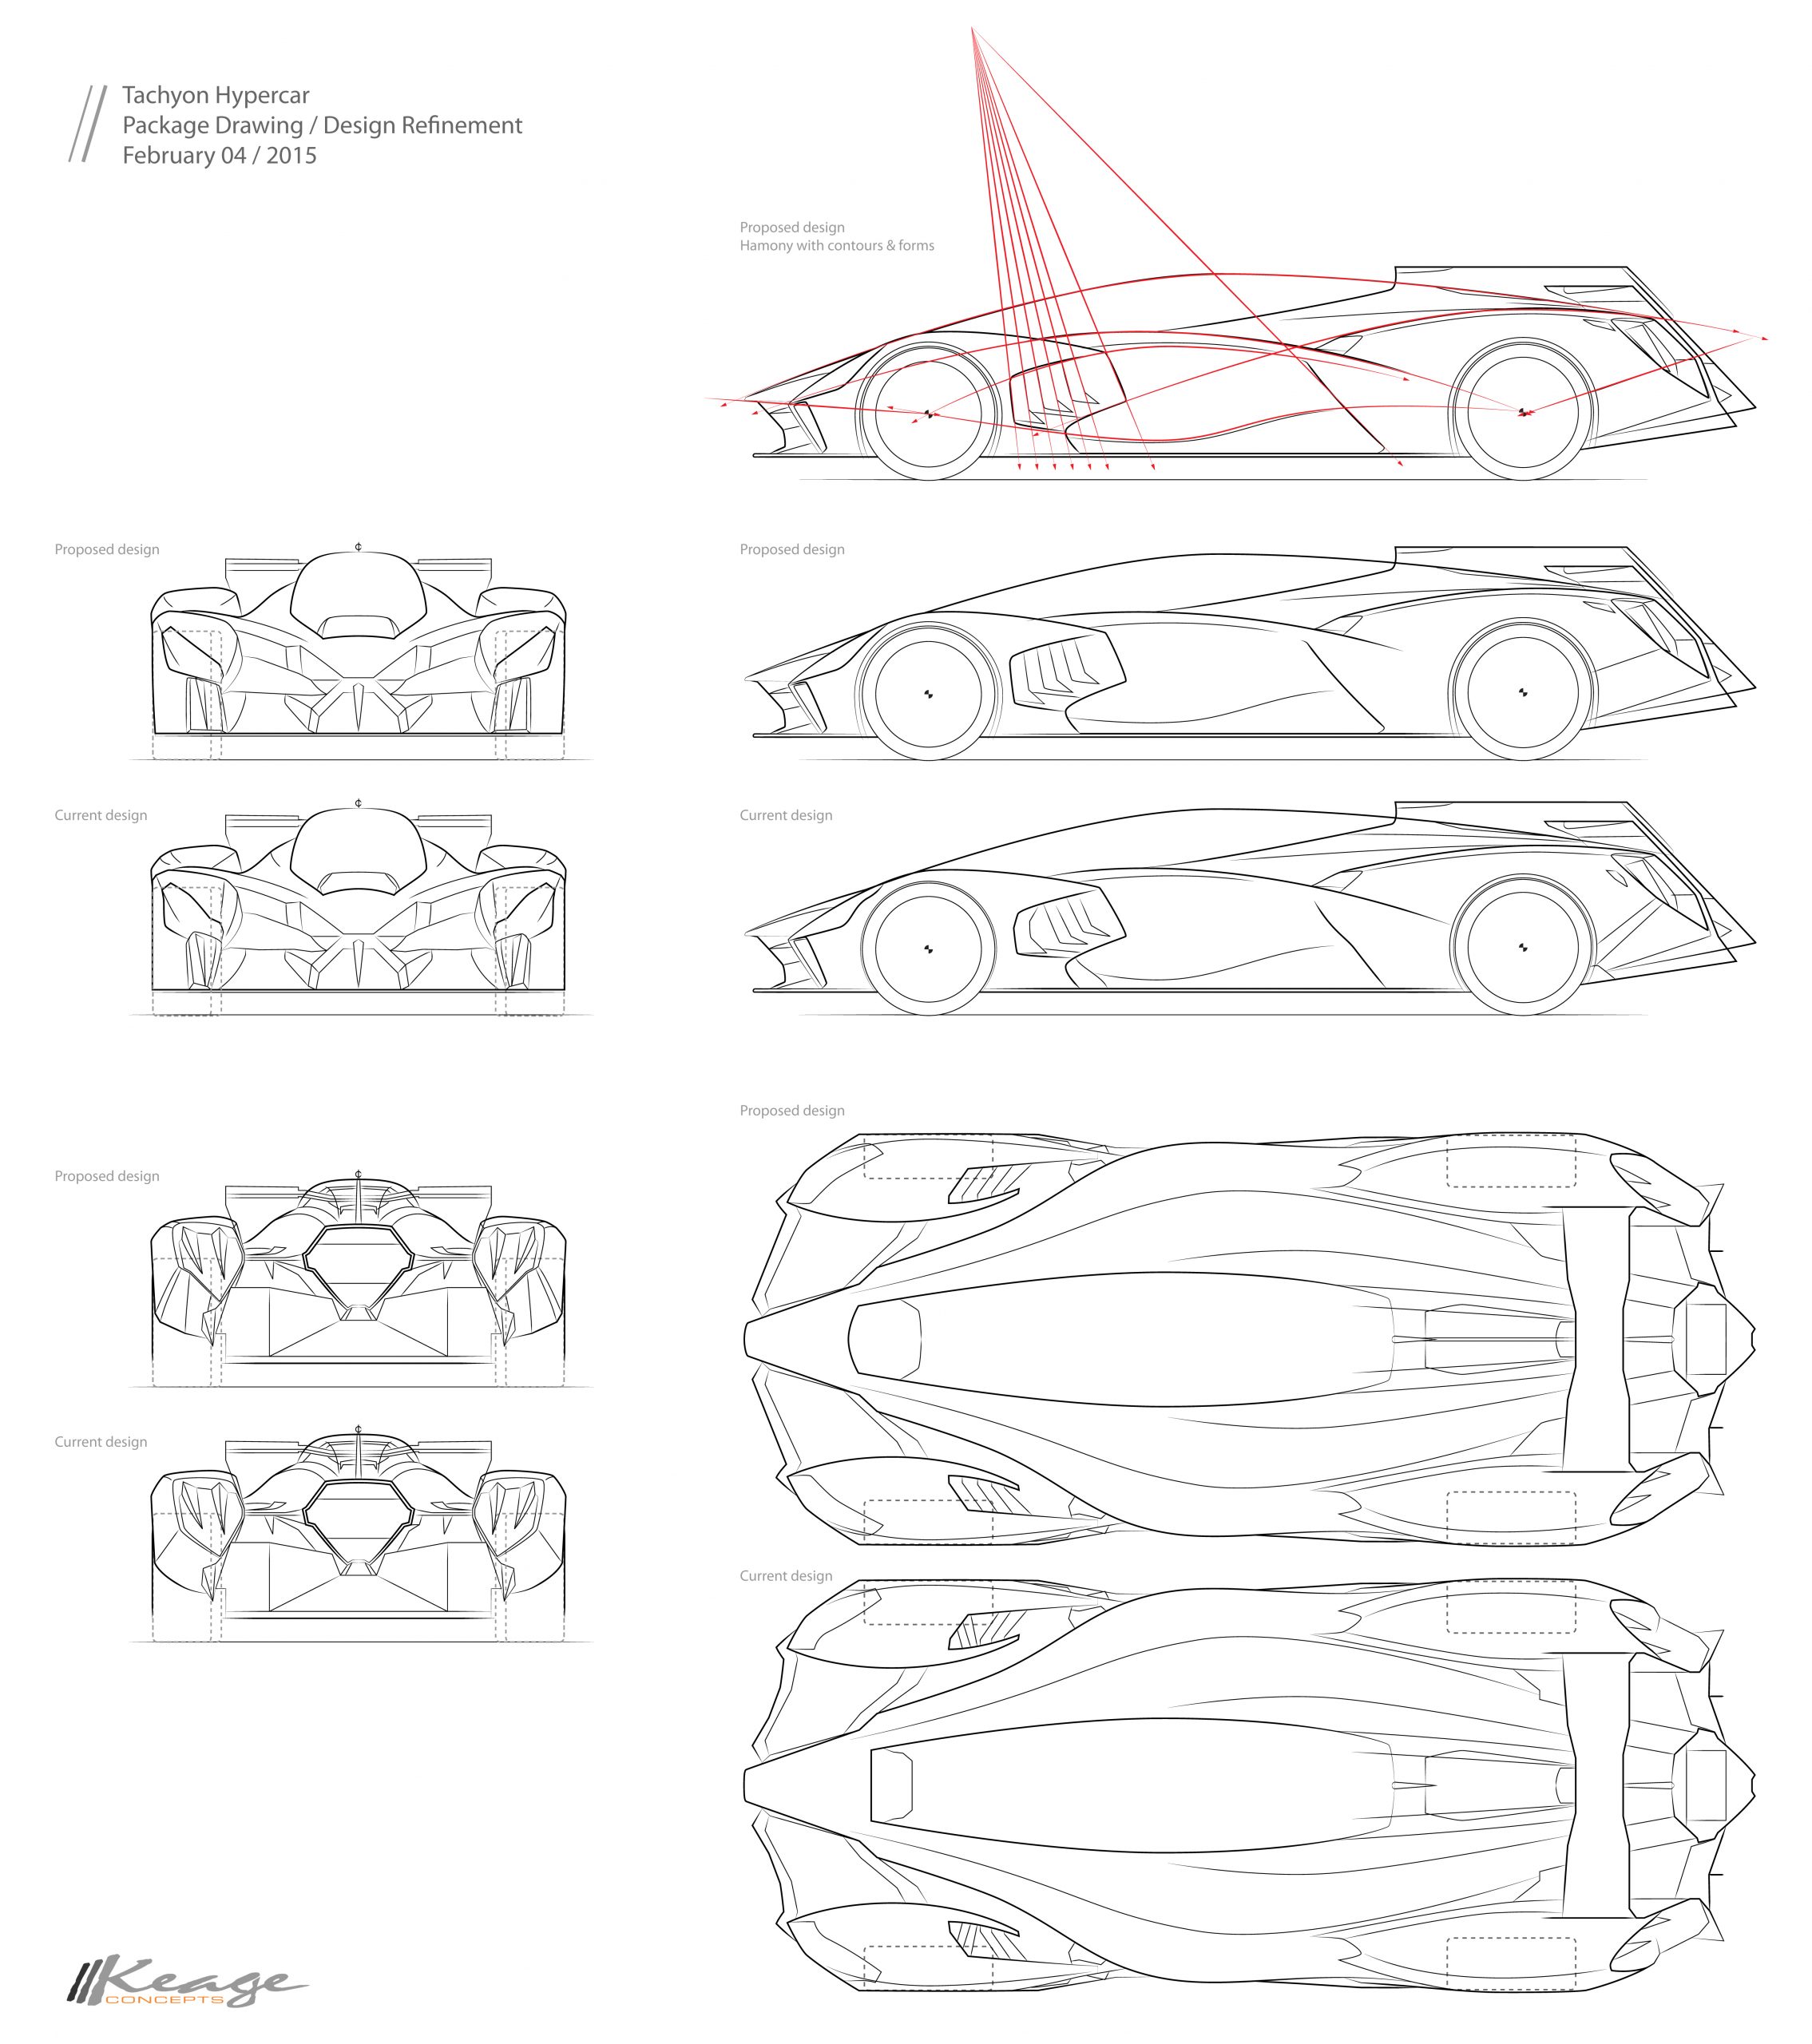 Keage Concepts Calgary Alberta Automotive Design